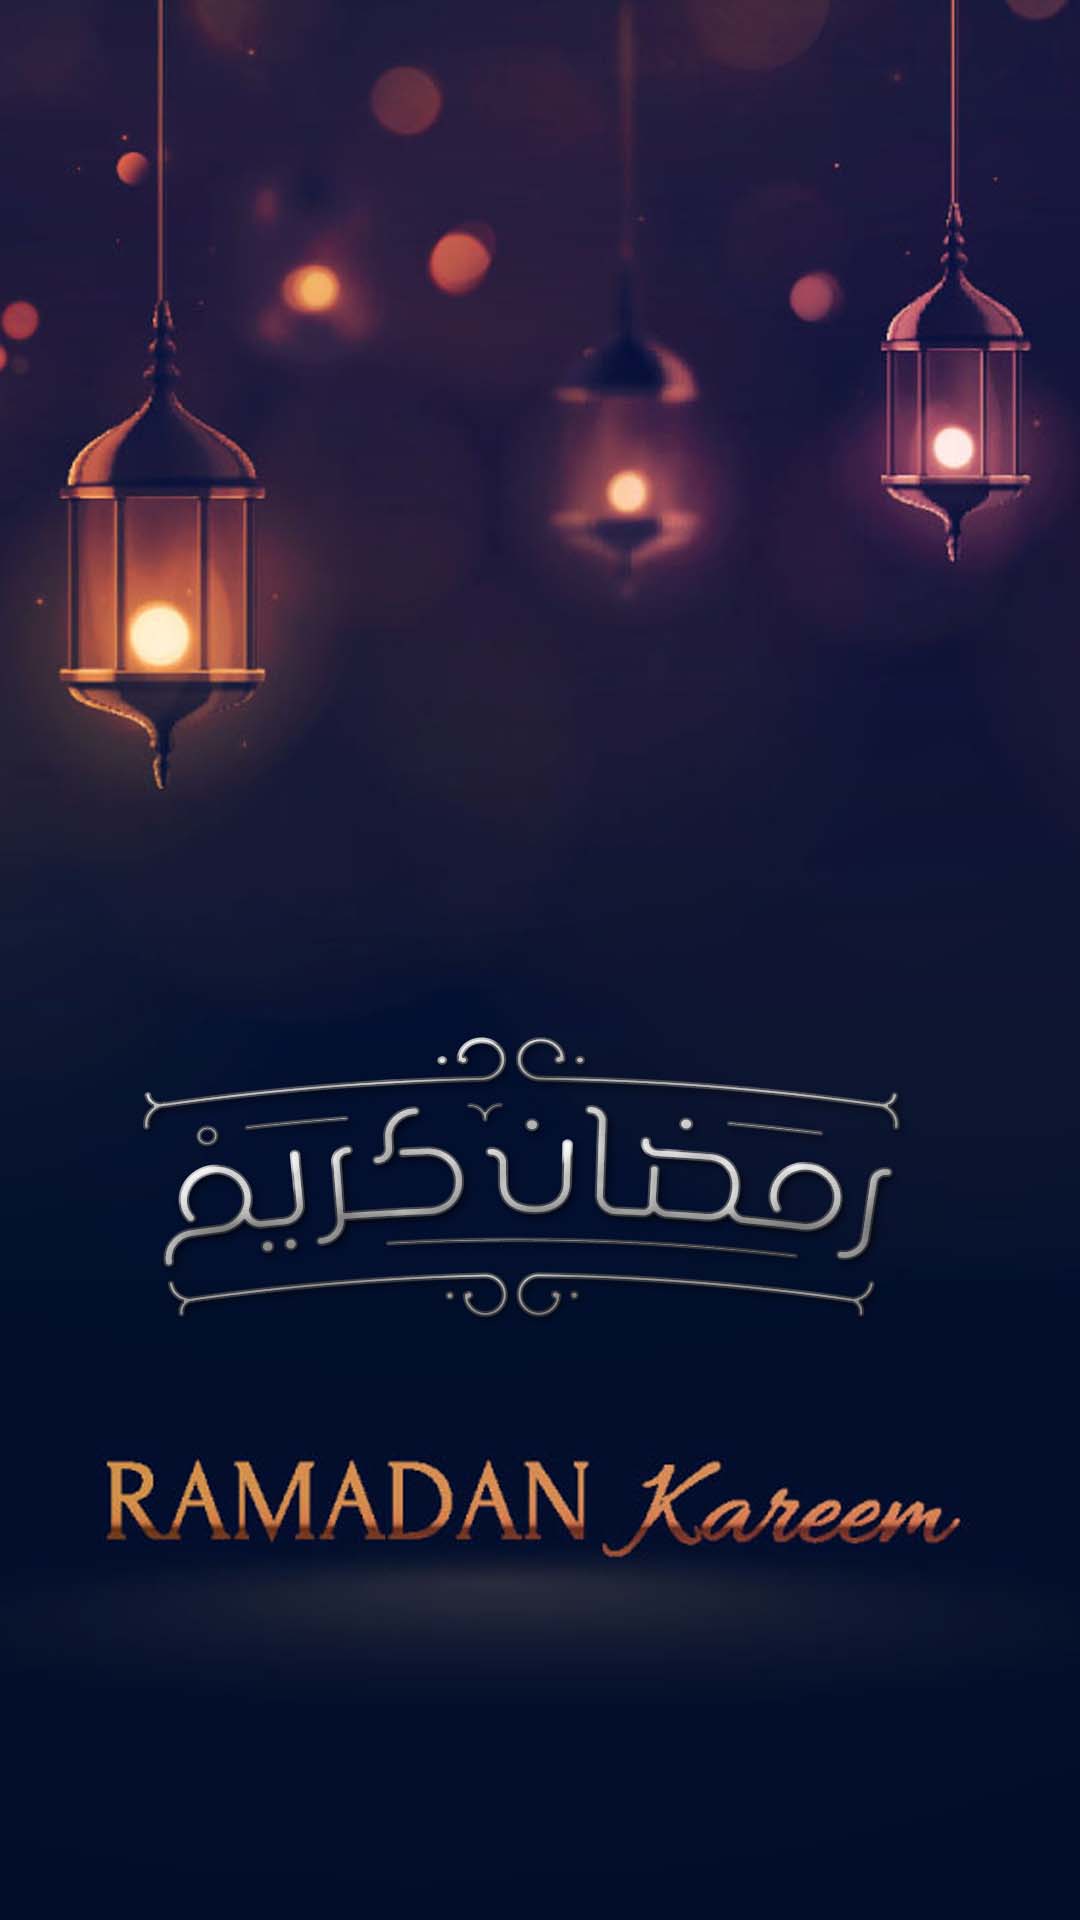 خلفيات رمضان متحركة , لشهر رمضان خلفيات روعة ومؤثرة رمزيات